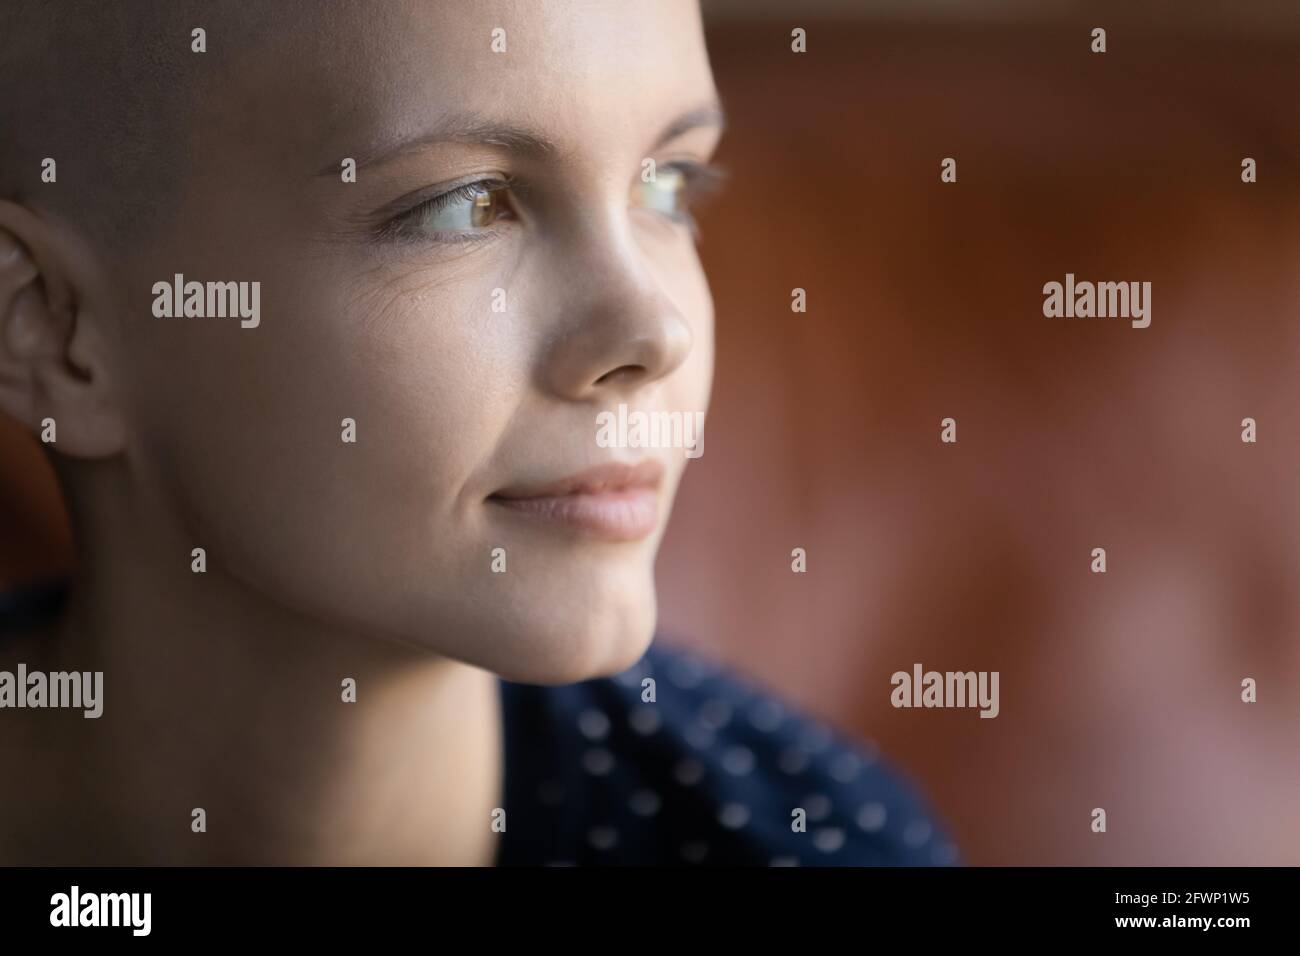 Das Gesicht eines nachdenklichen, haarlosen Onkologiepatienten, der an das Leben denkt Stockfoto